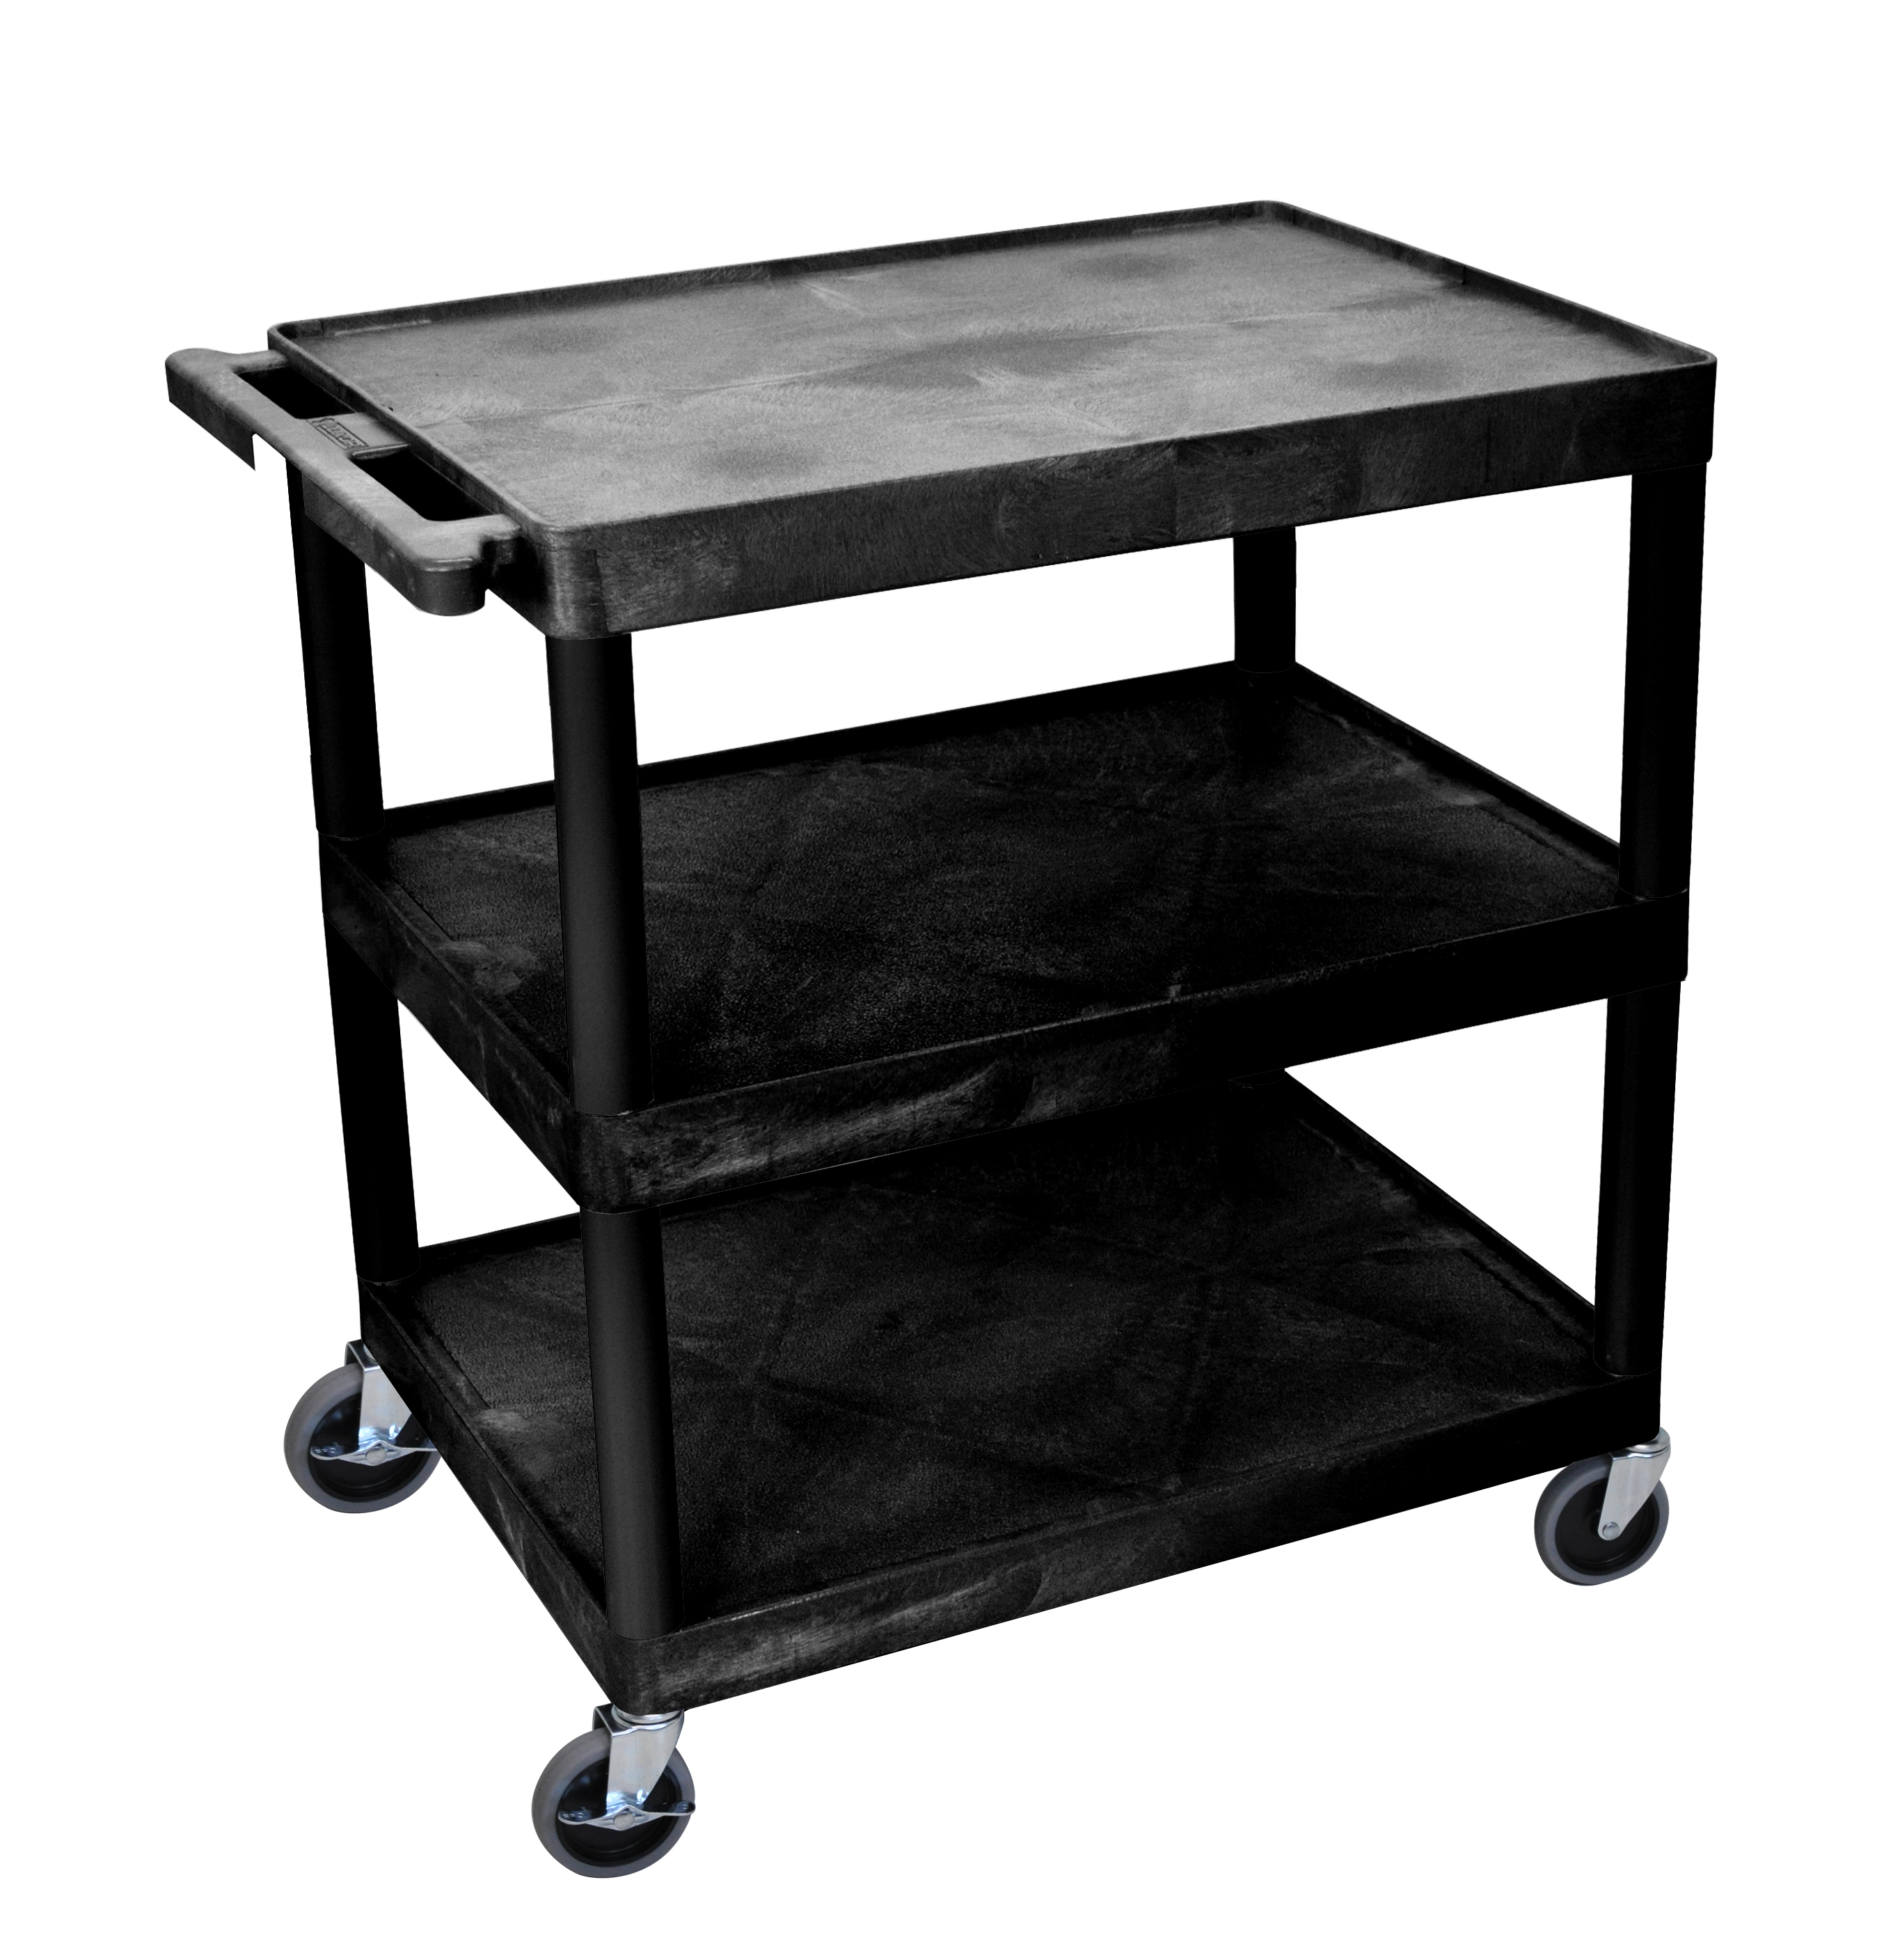 Offex Of-tc222-b Multipurpose Large Flat Shelf Cart -3 Shelves - Black